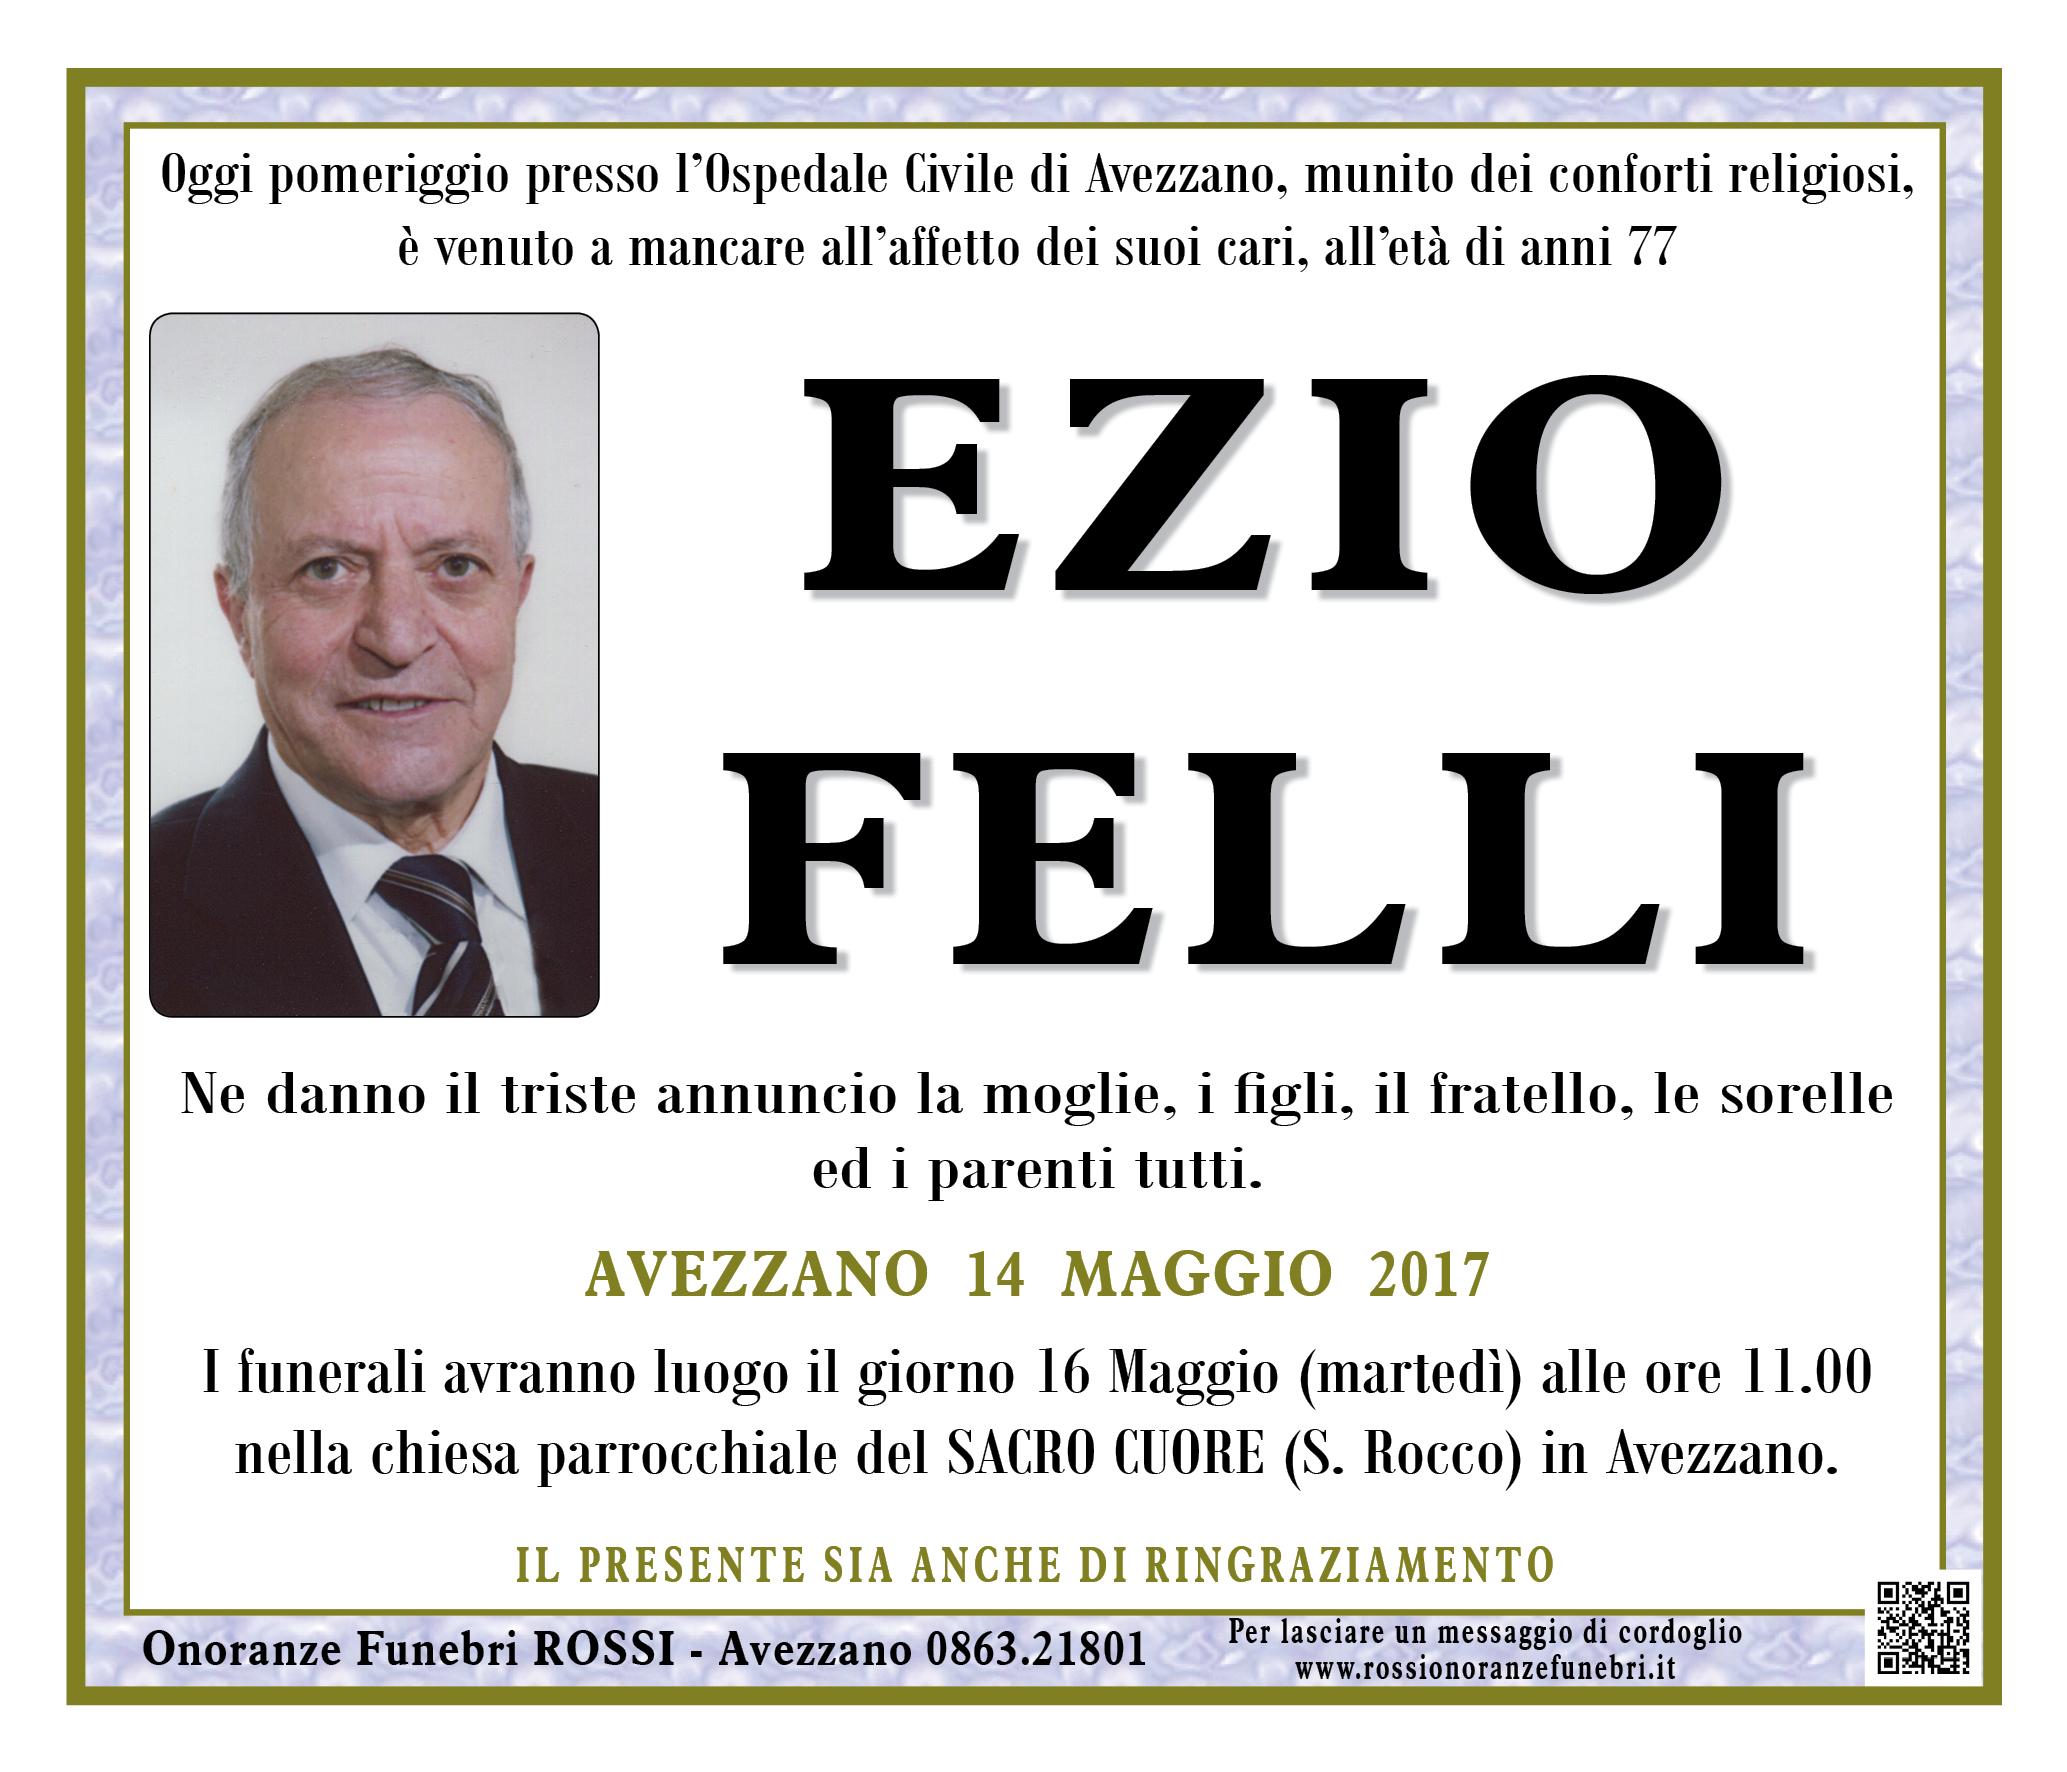 Ezio Felli